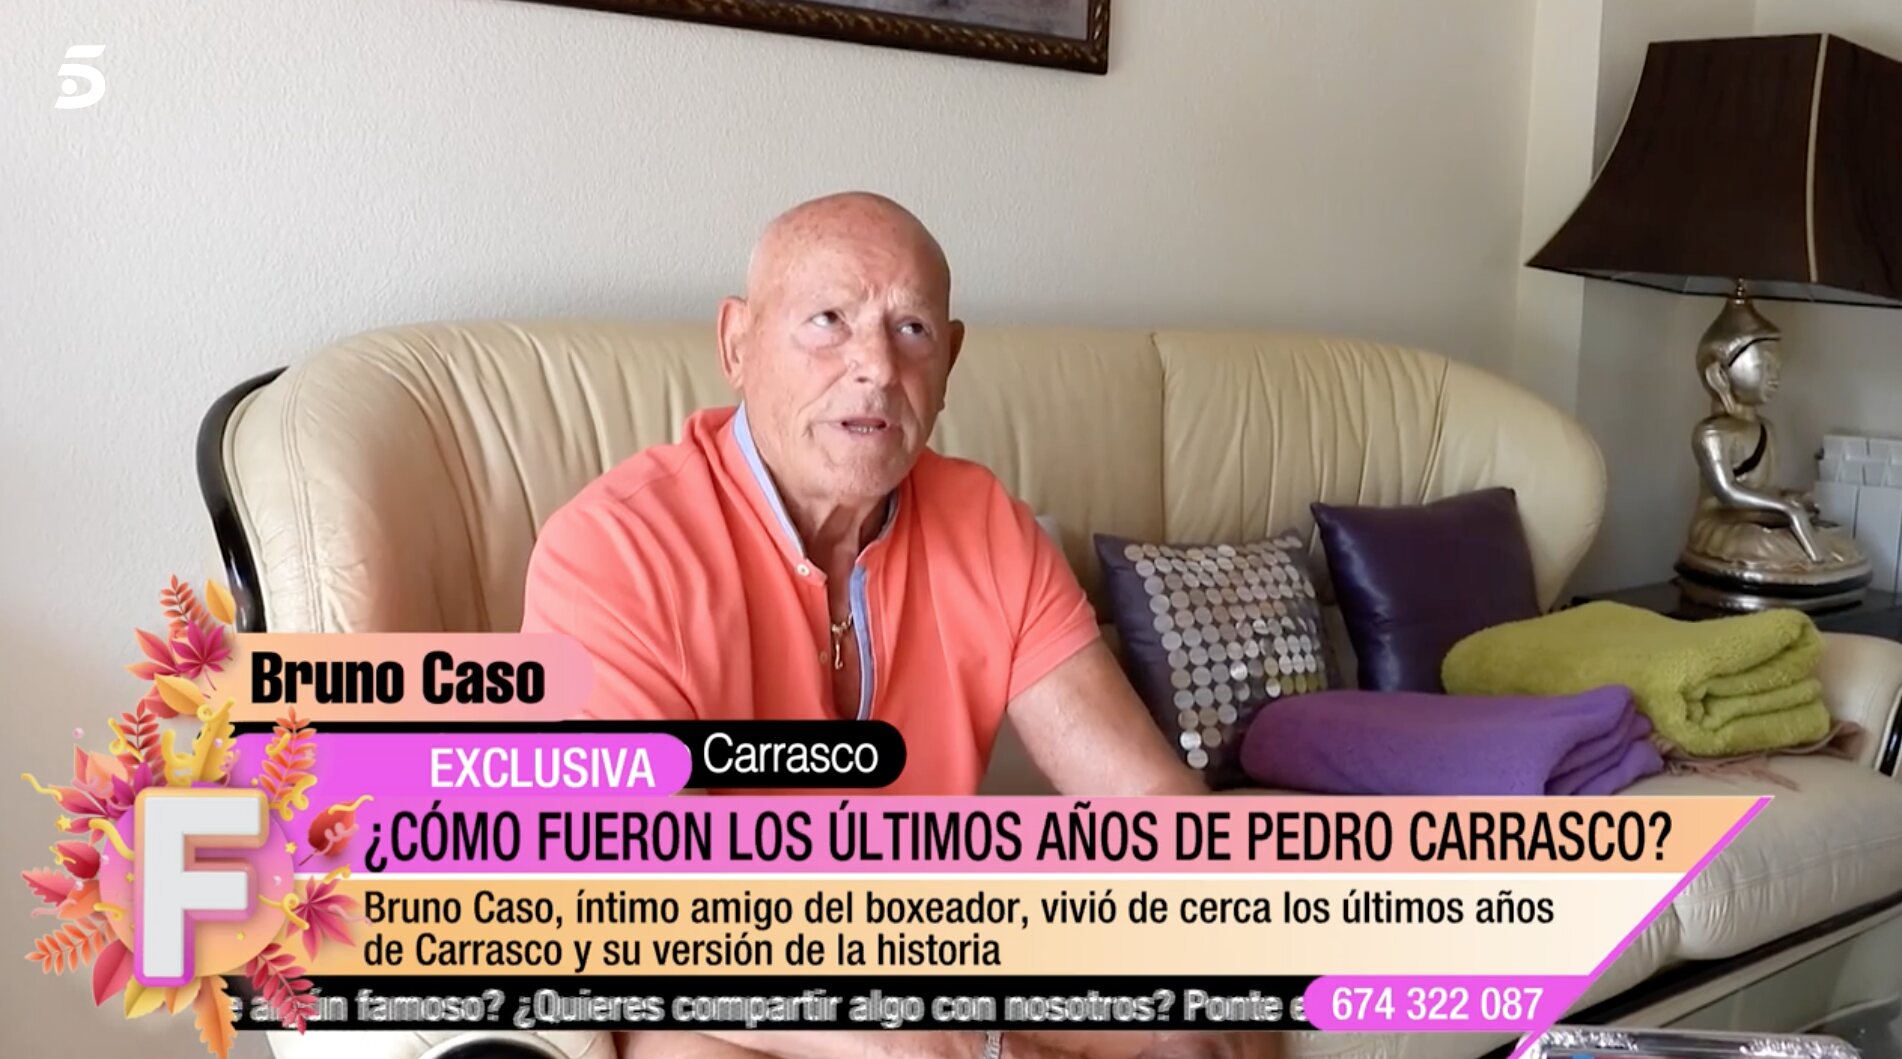 Bruno Caso fue amigo del boxeador desde 1990 hasta su muerte | Foto: Telecinco.es